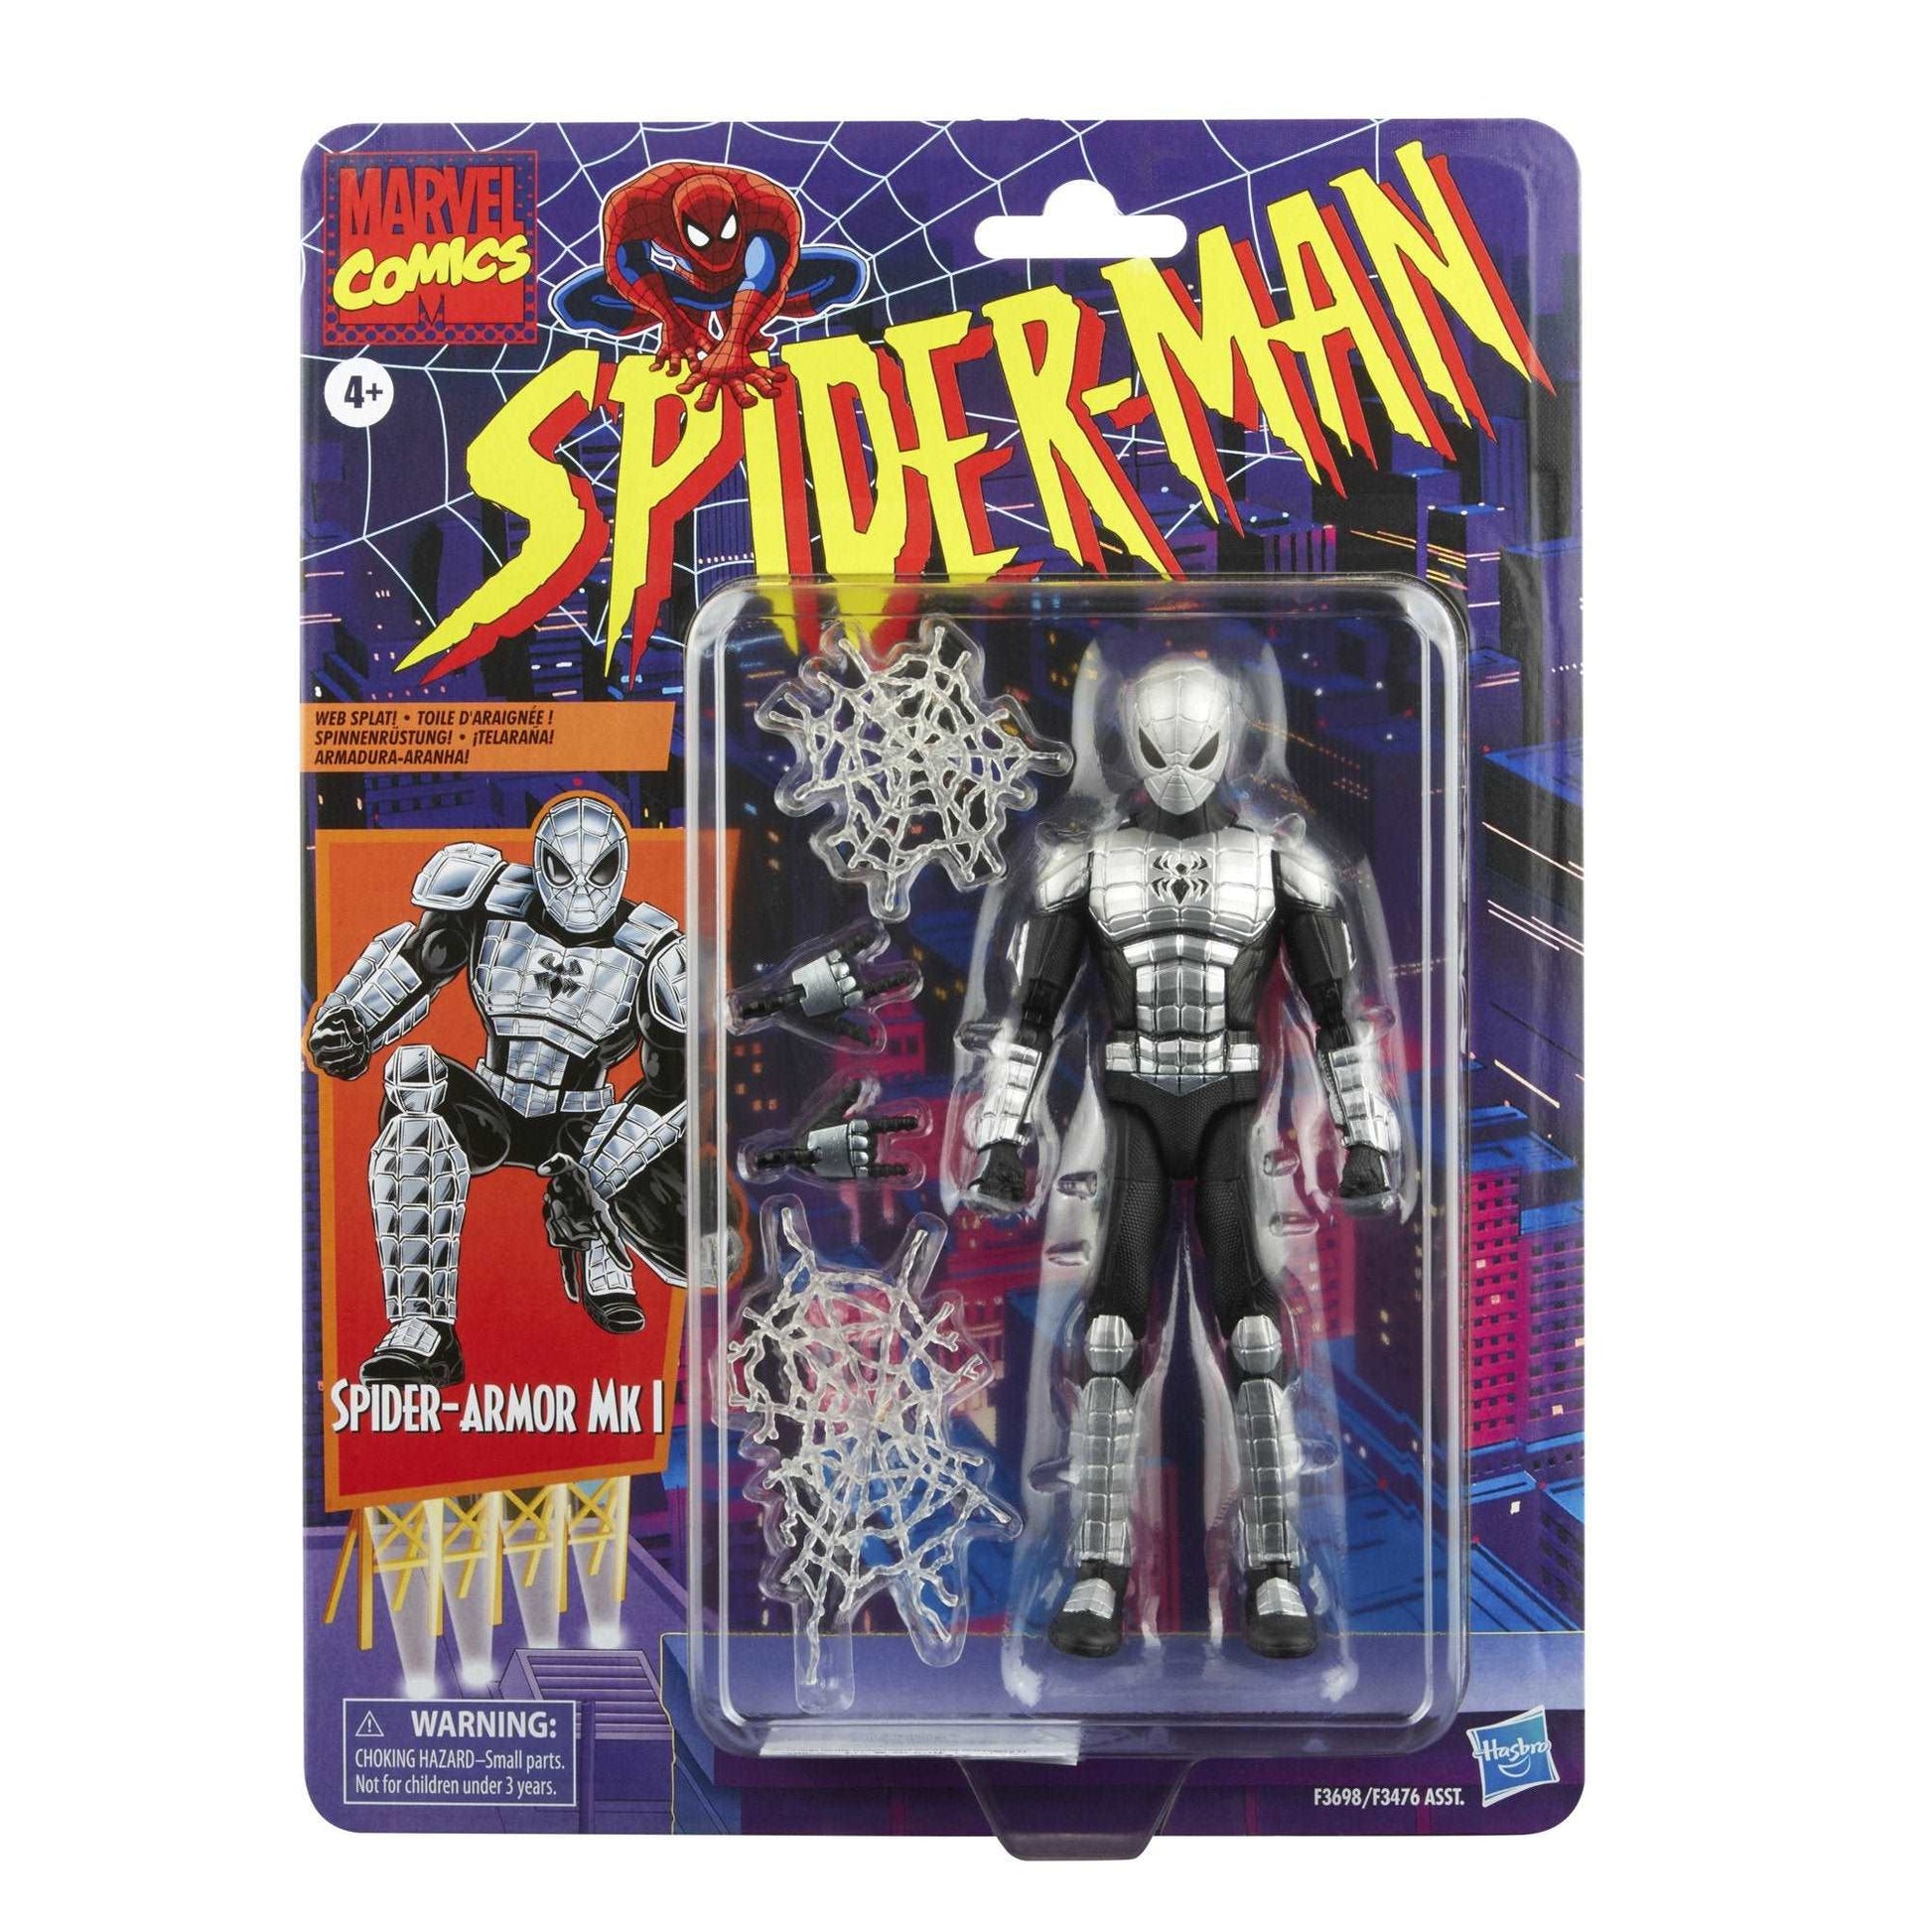 Marvel Legends Series Retro Spider-Armor MK1 Spider-Man Peter Parker Figure front of Blister Card